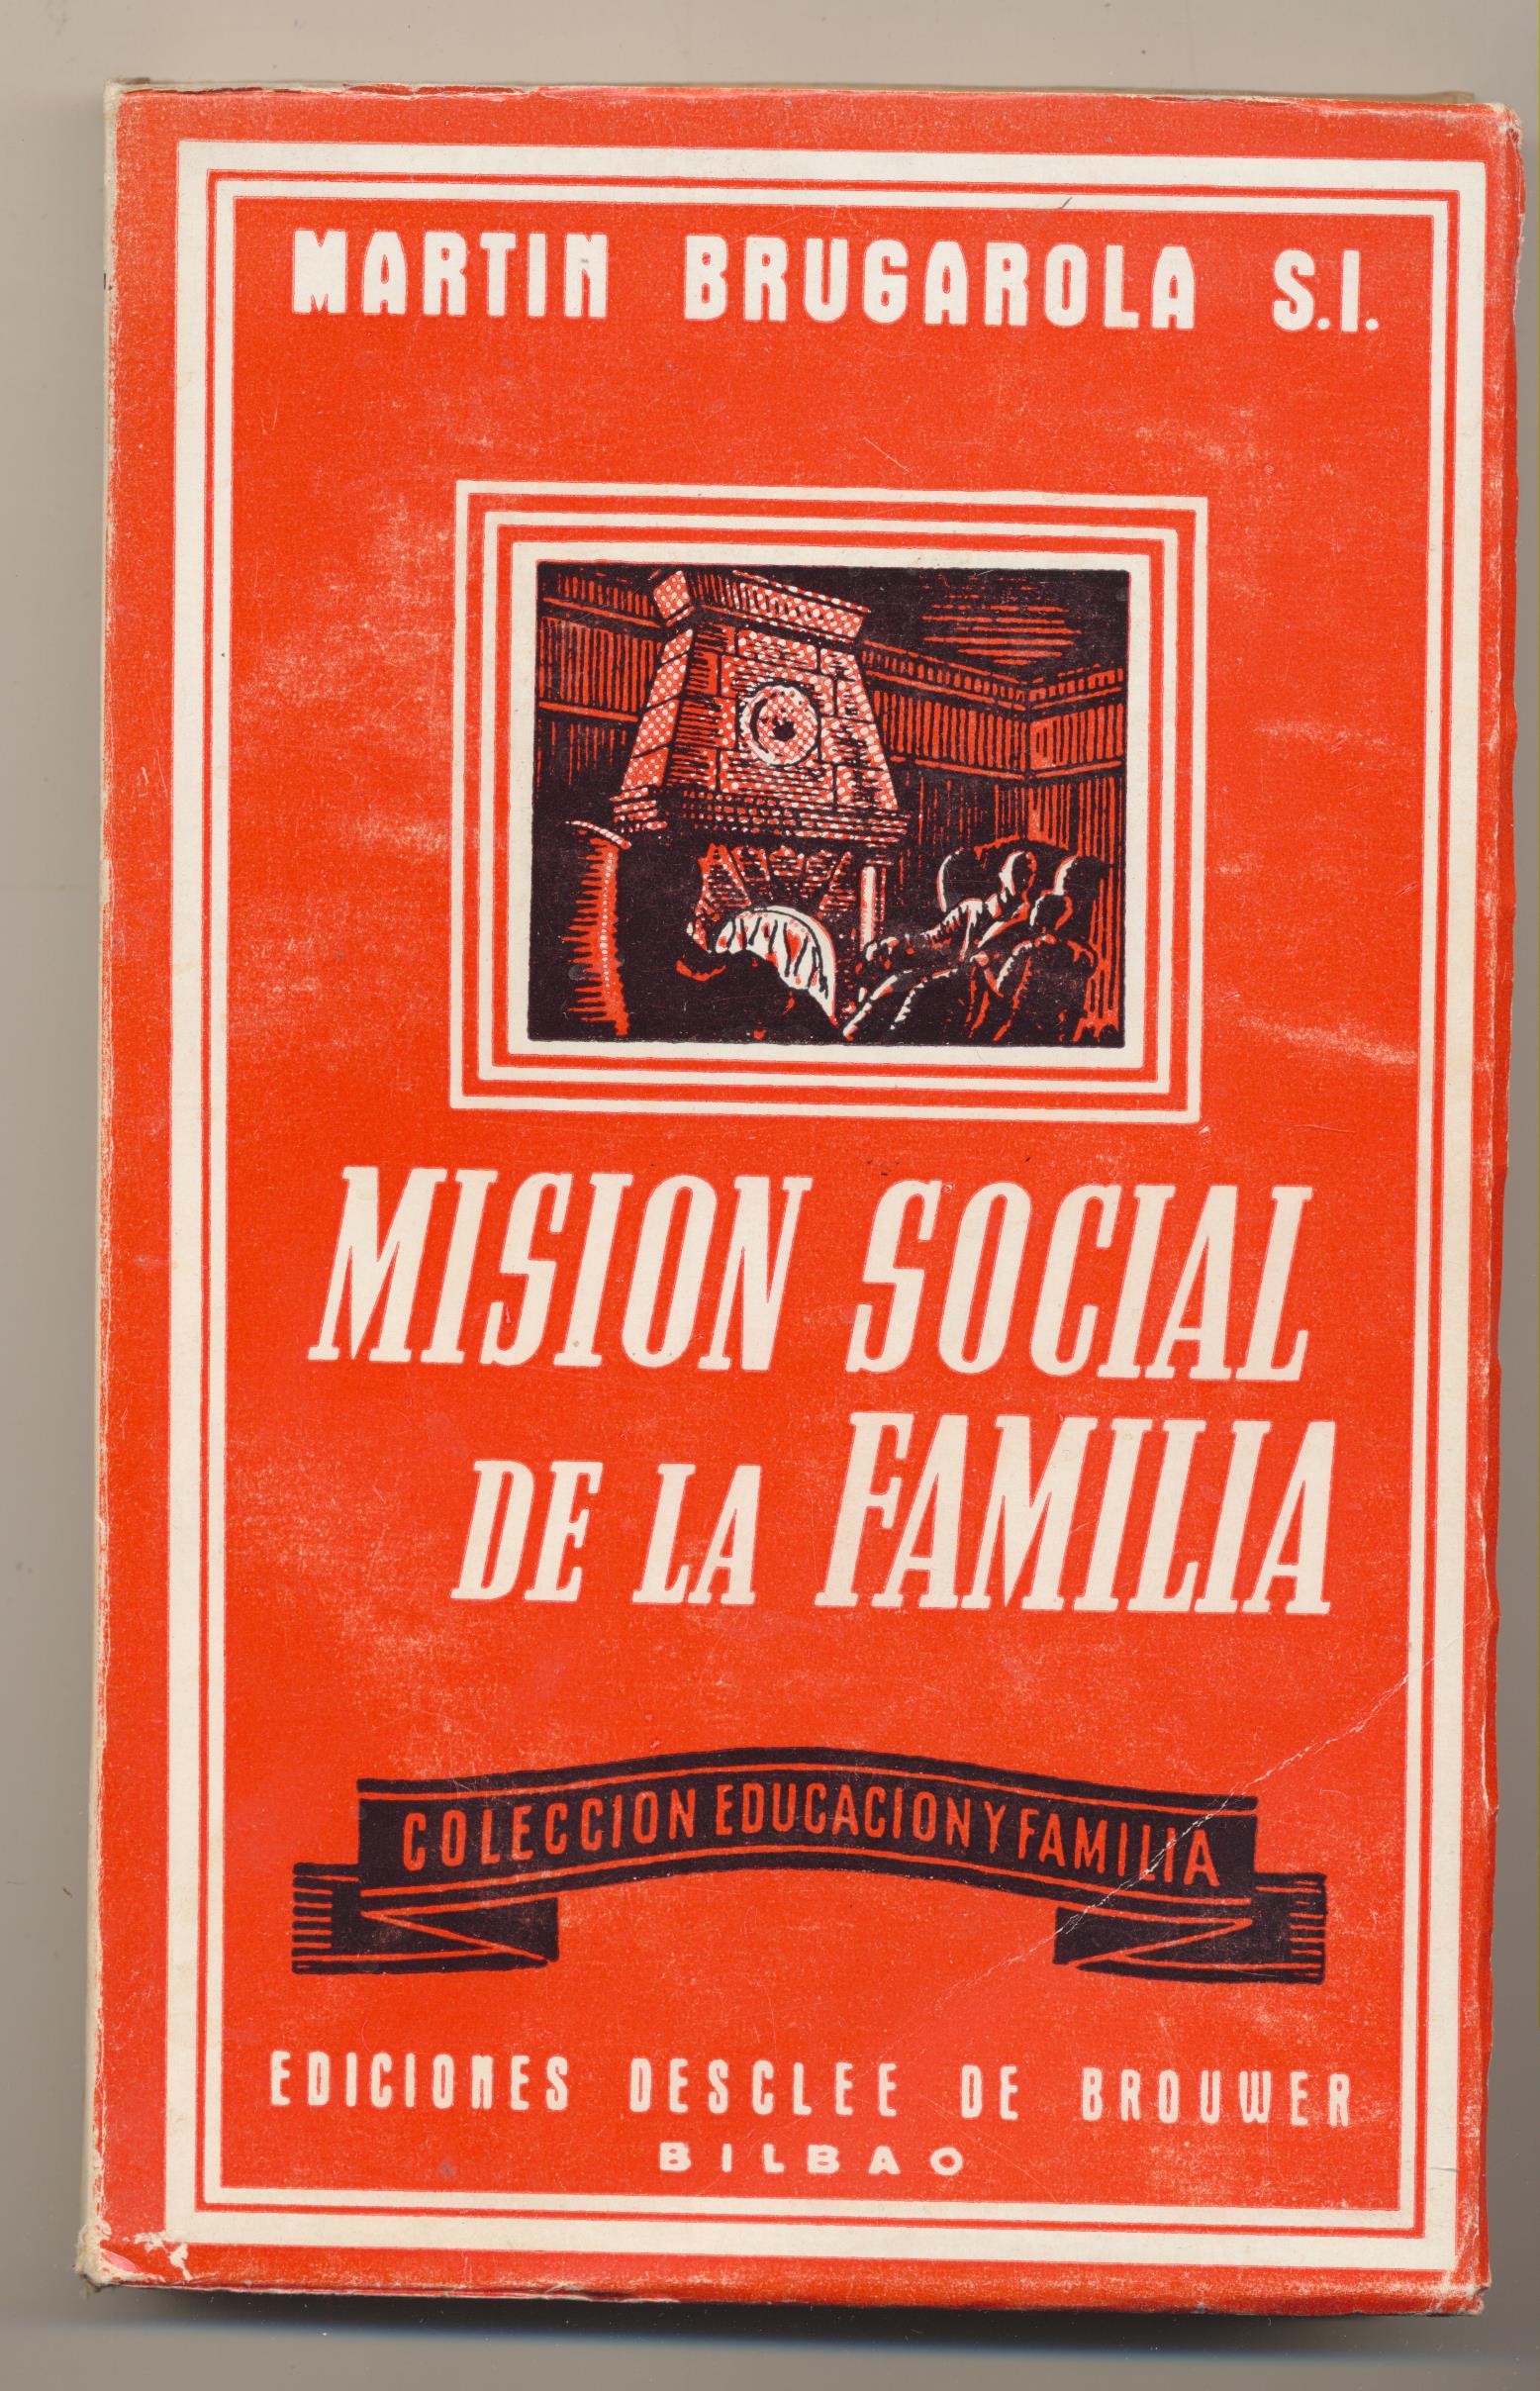 Martin Brugarola S. I. Misión Social de la Familia. Desclee de Brouwer 1965